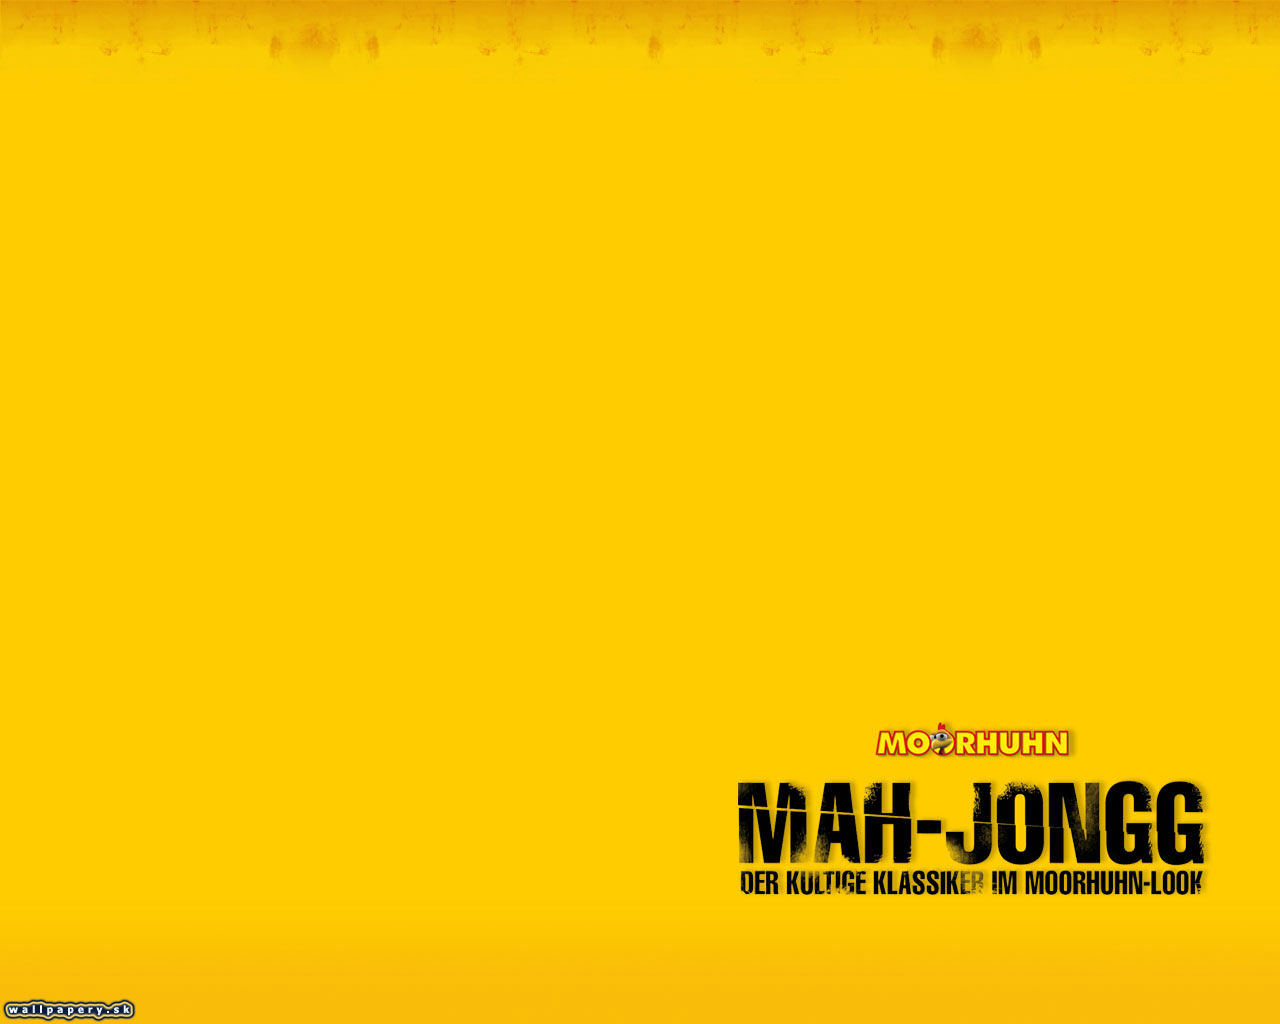 Moorhuhn MAH-JONGG - wallpaper 6